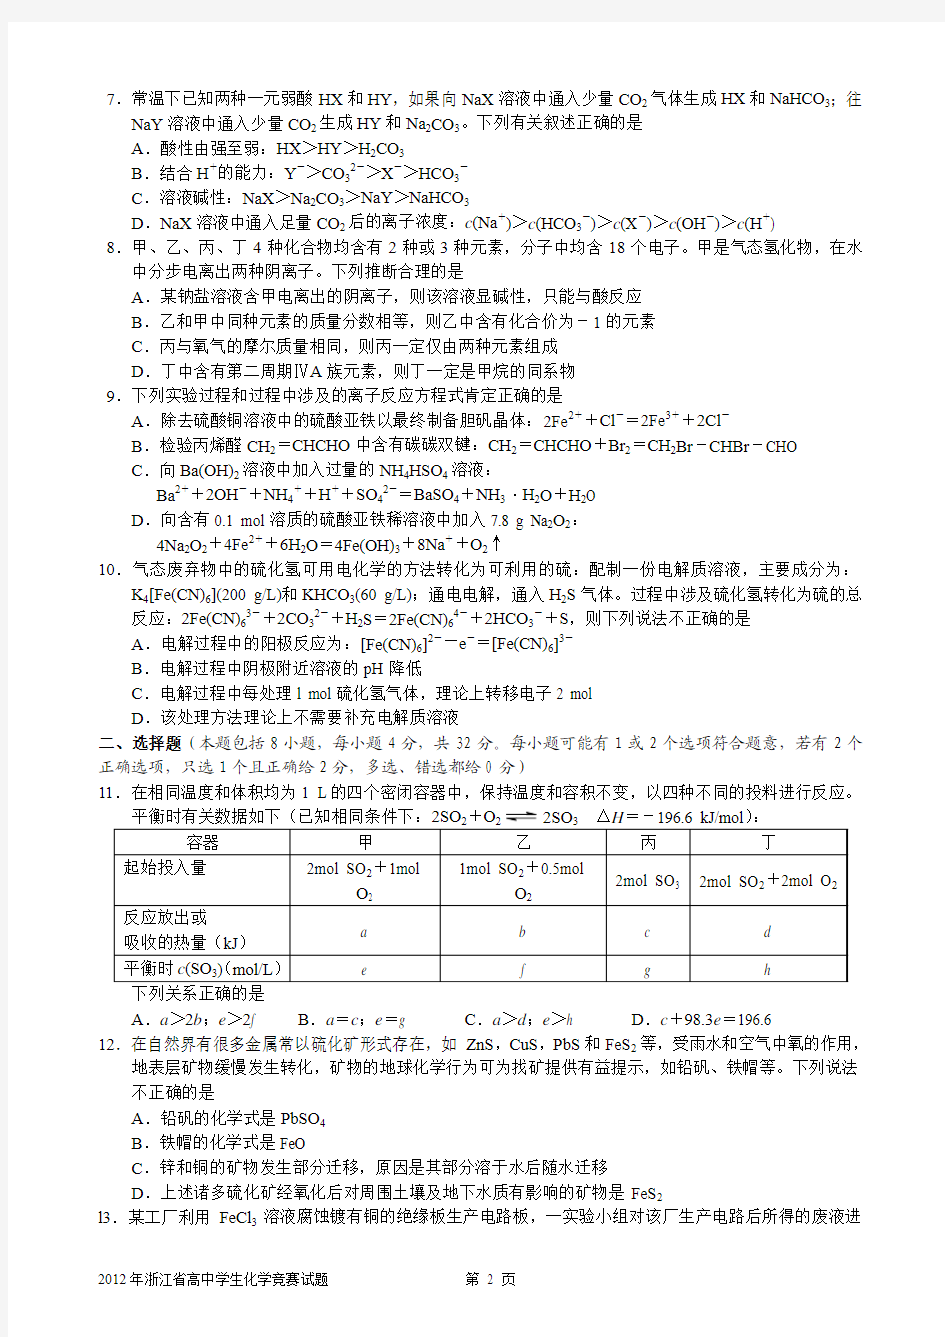 2012年浙江省高中学生化学竞赛试题及答案与评分标准(纯WORD版)